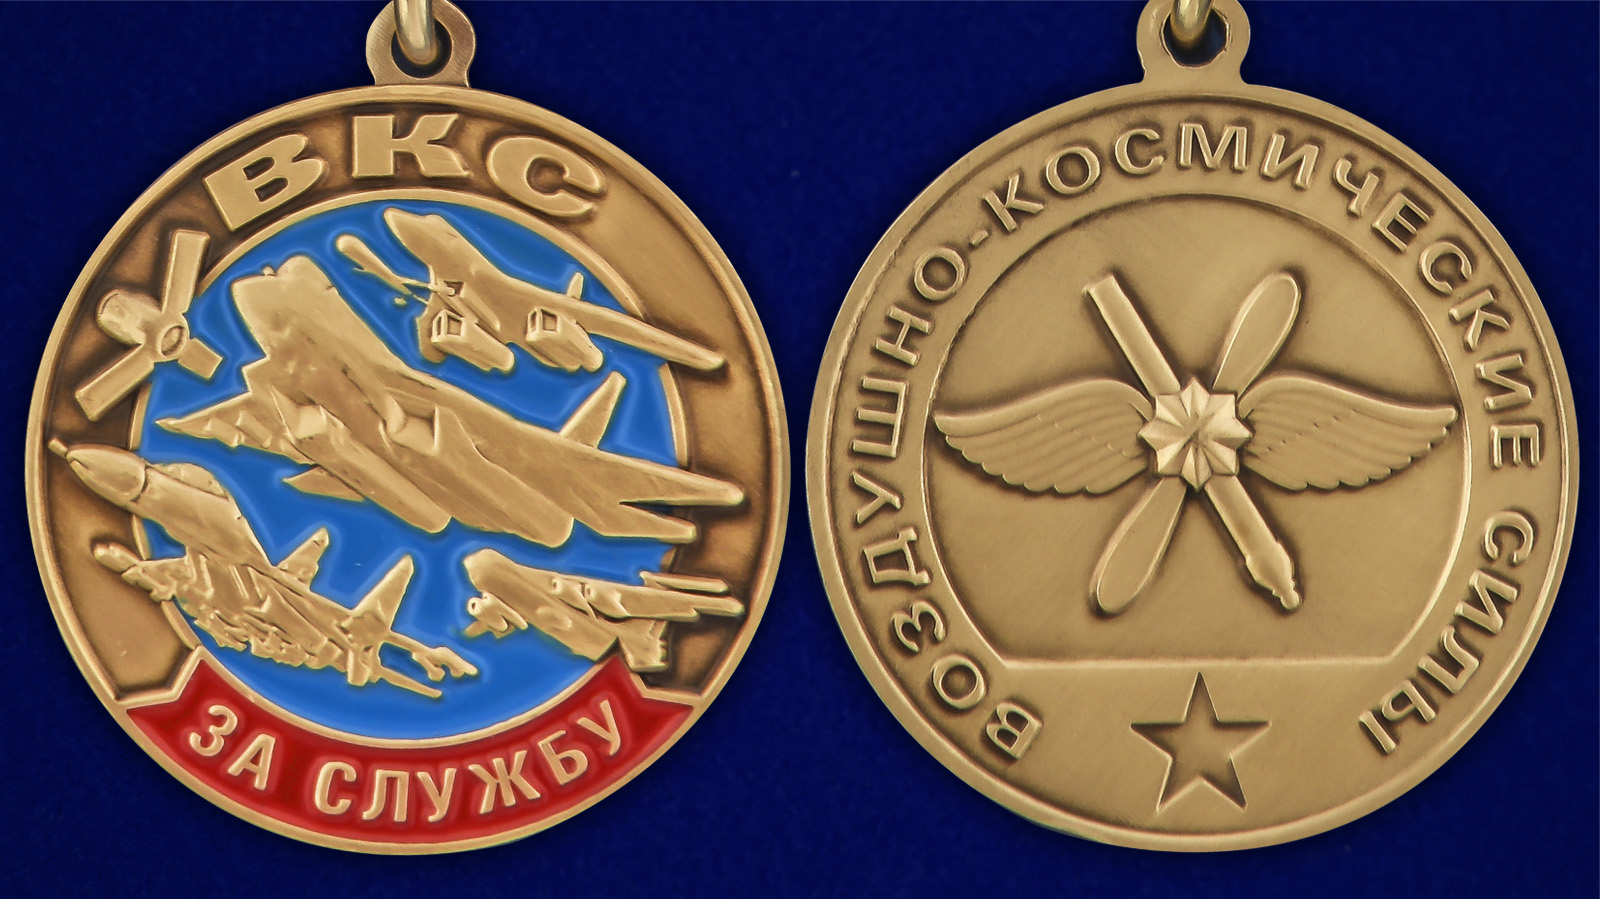 Памятная медаль "За службу в ВКС" - аверс и реверс